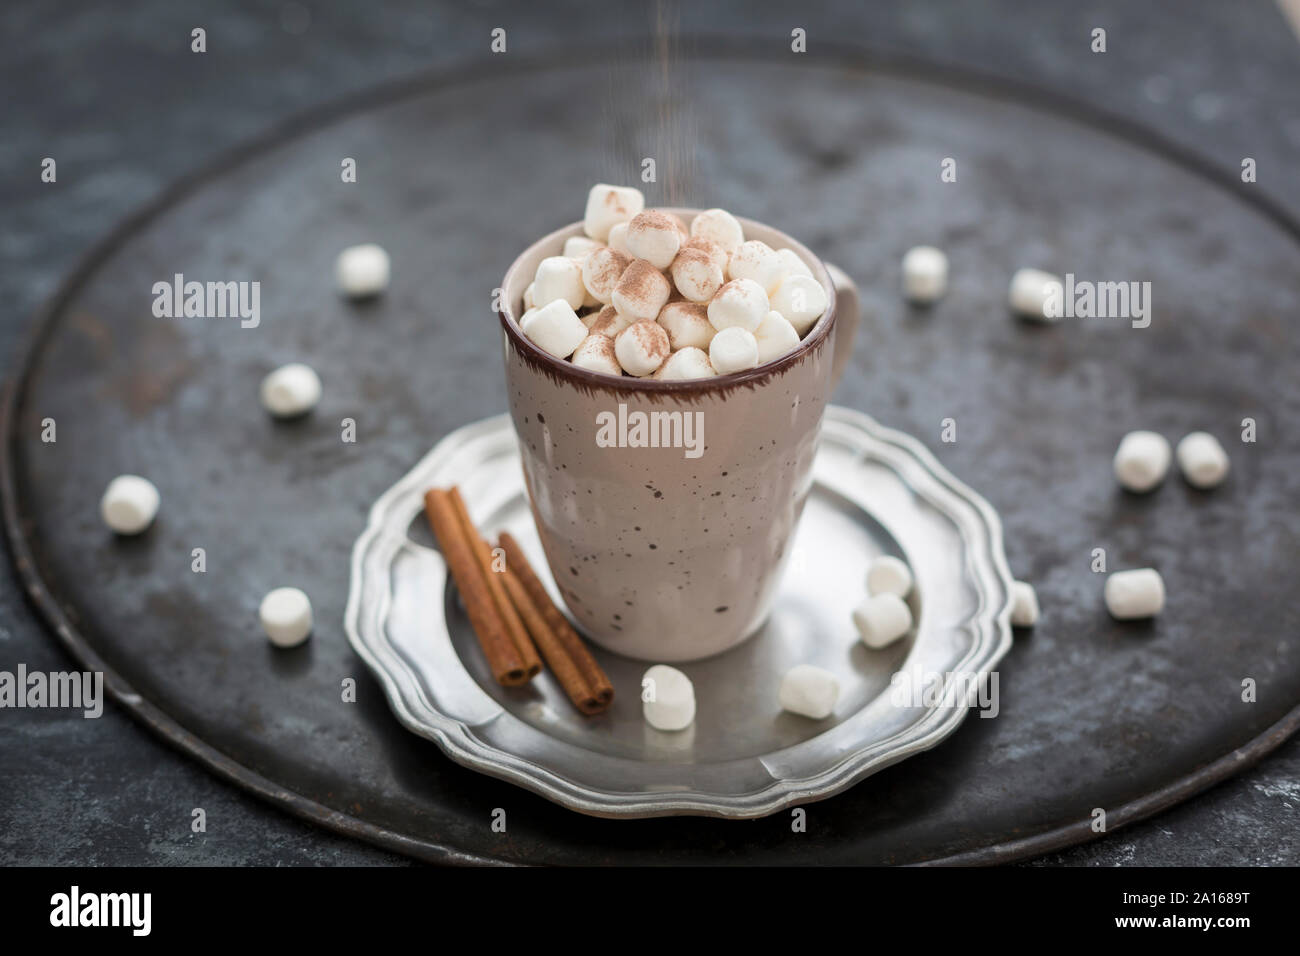 https://c8.alamy.com/compde/2a1689t/prise-kakaopulver-auf-tasse-heisse-schokolade-mit-marshmallows-2a1689t.jpg